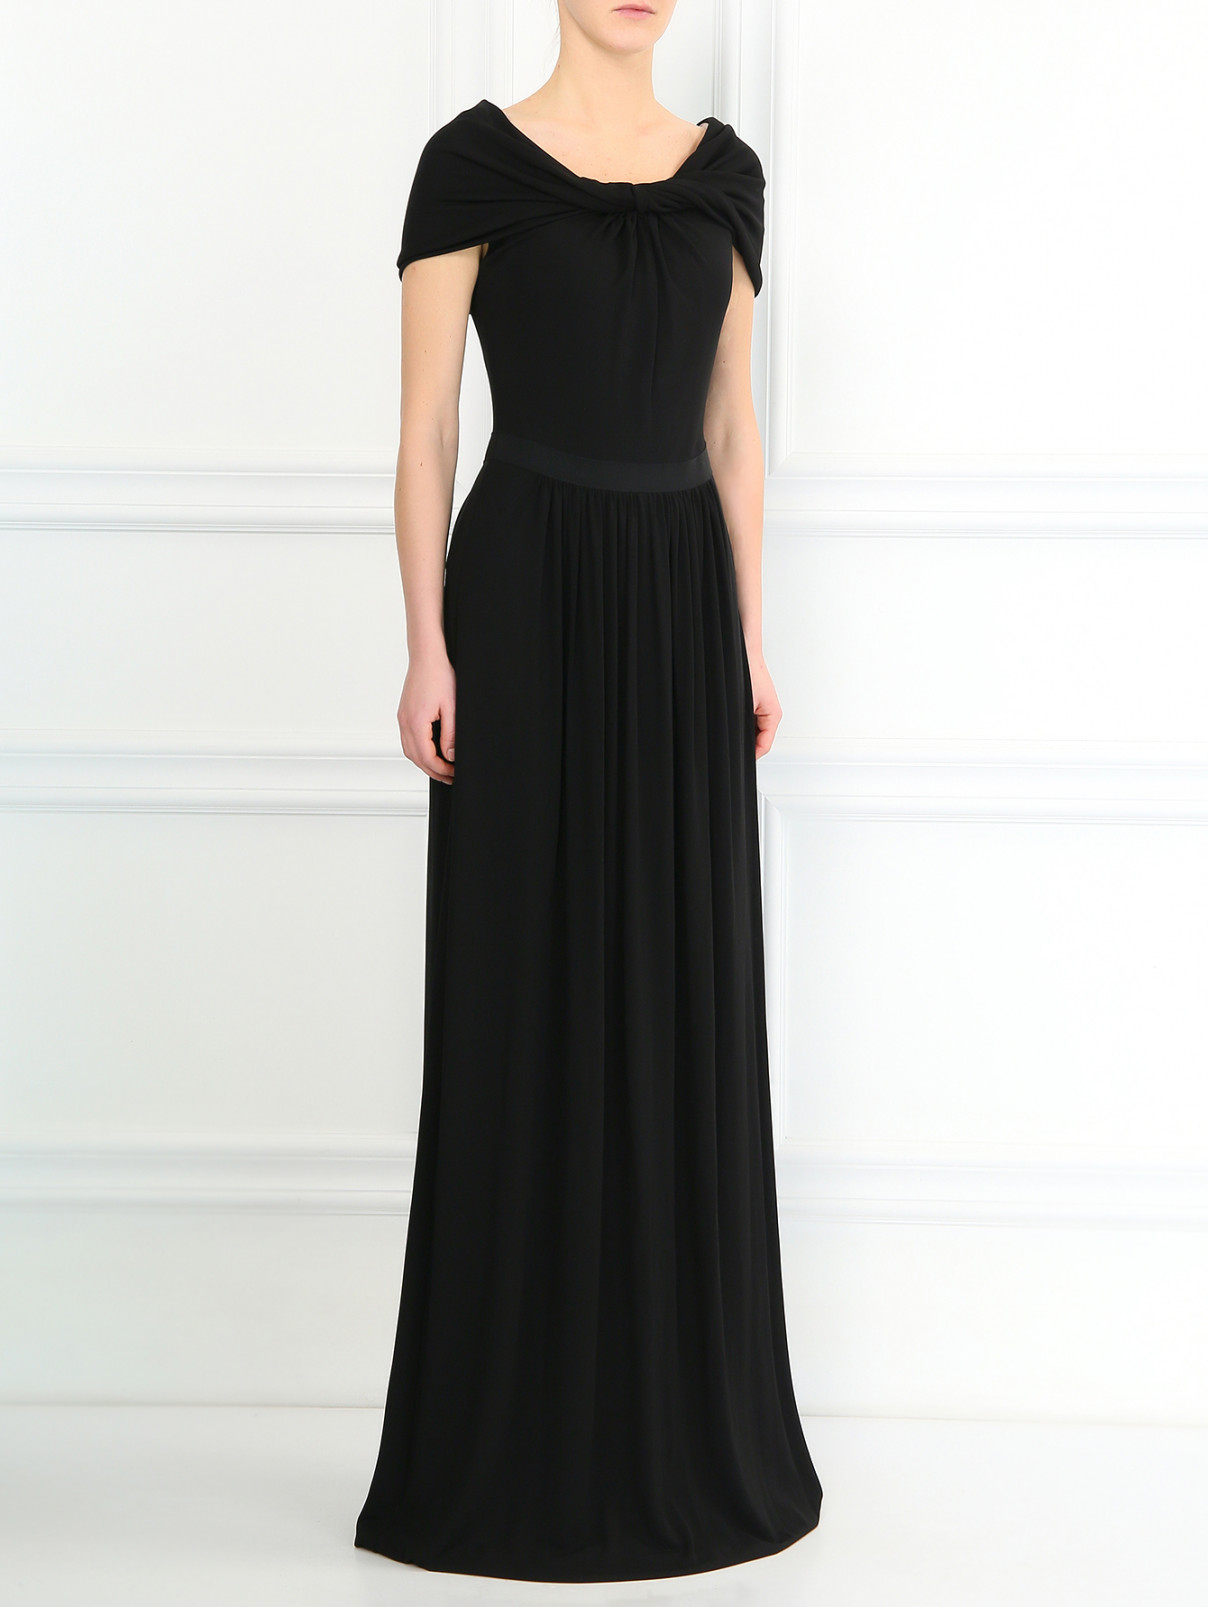 Платье-макси с драпировкой Giambattista Valli  –  Модель Общий вид  – Цвет:  Черный